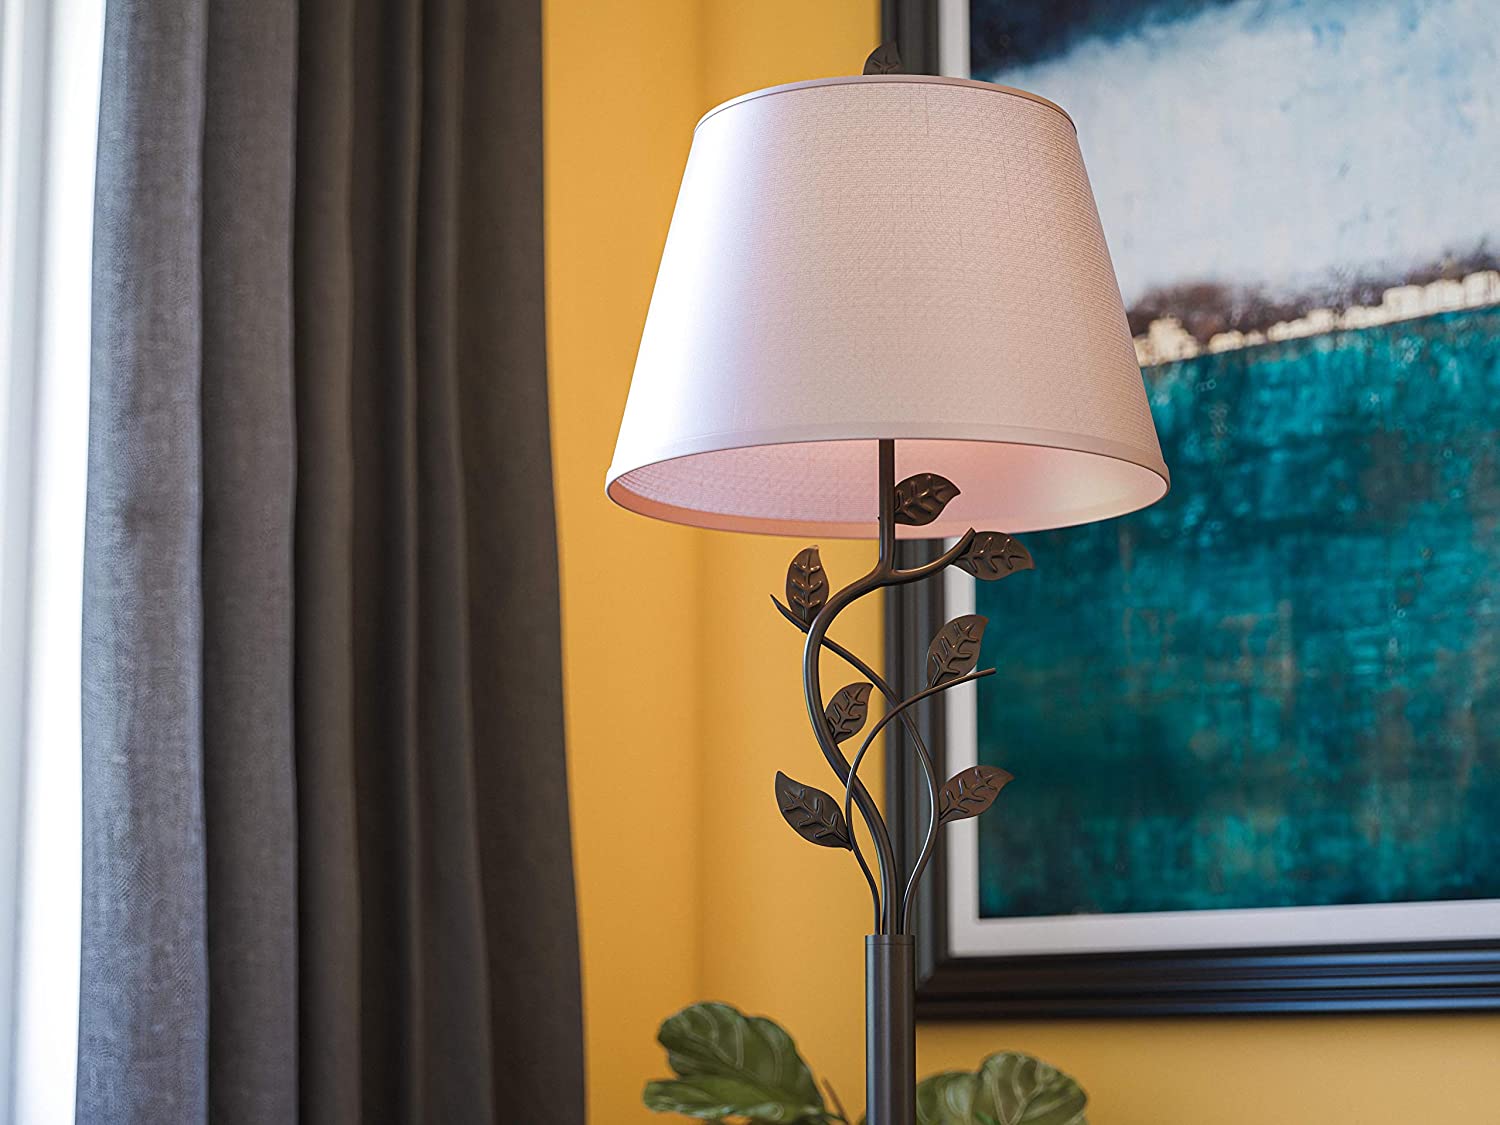 Kenroy Home Rustic Floor Lamp. 1 10 Unique Floor Lamps to Brighten Your Living Room - 22